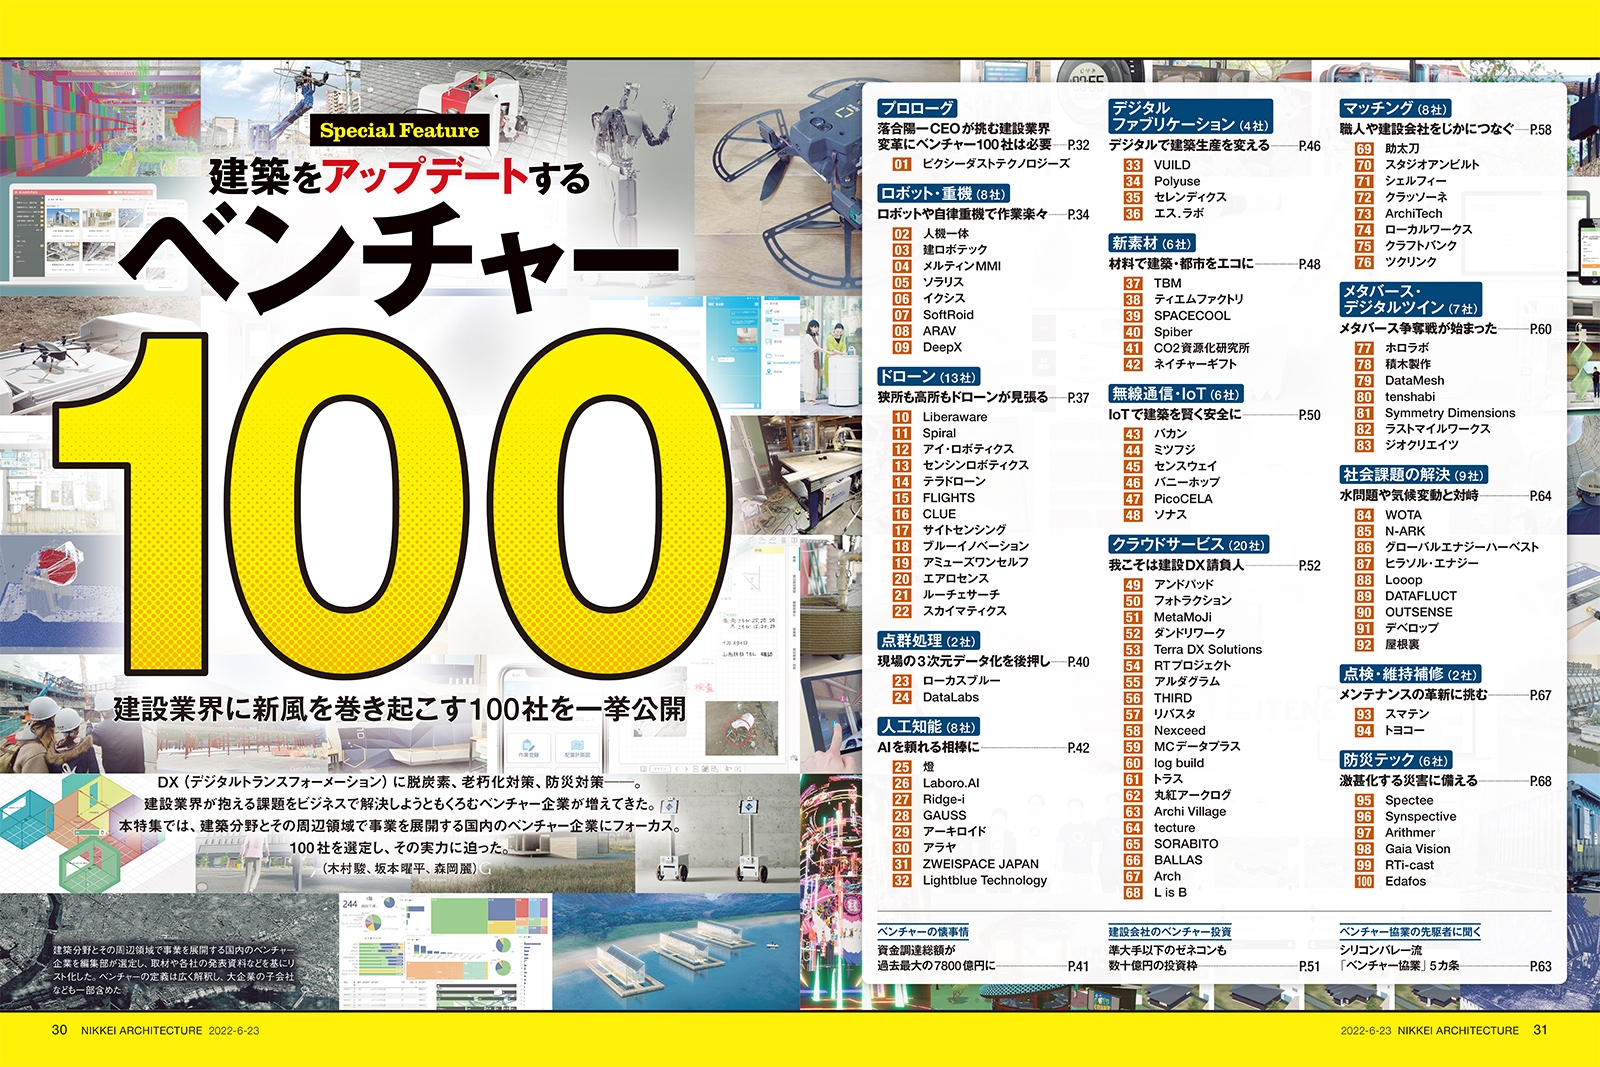  日経アーキテクチュア、2022年6月23日号「建築をアップデートするベンチャー100」に選出されました。